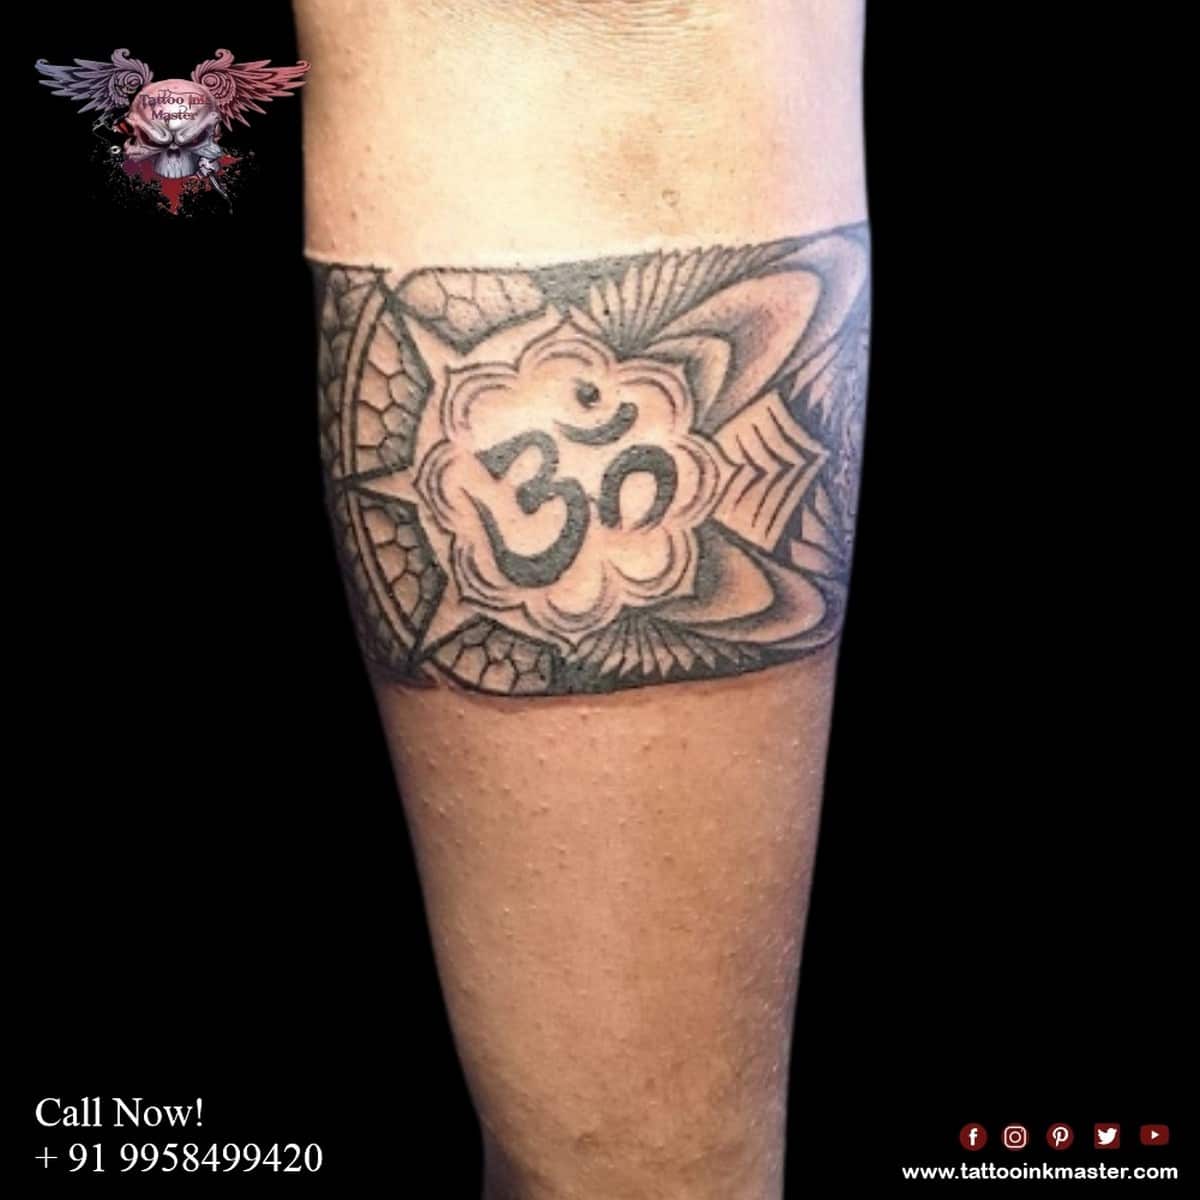 Self Arousing OM Tattoo | Tattoo Ink Master